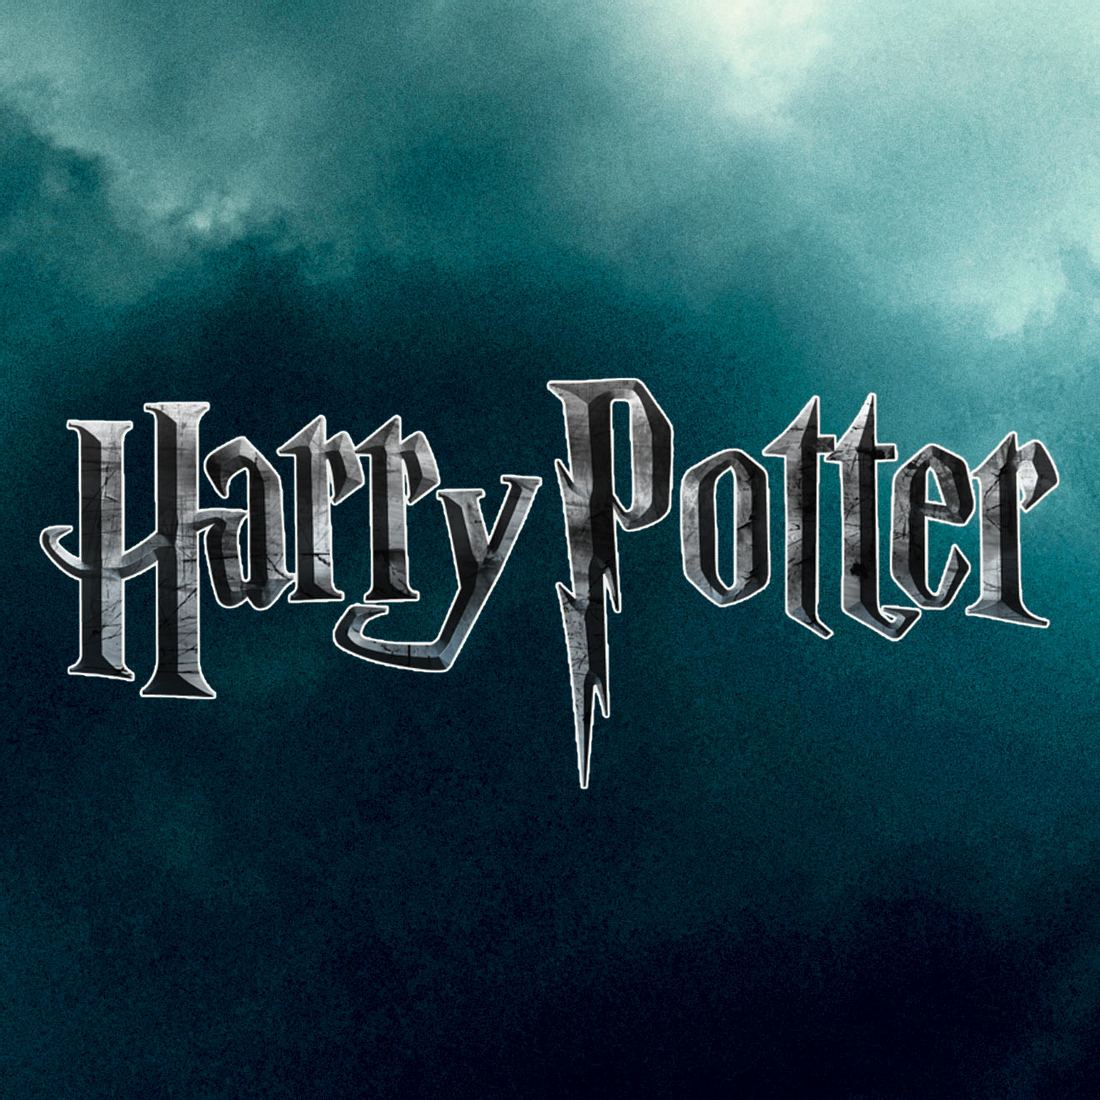 Die Harry Potter Verfilmungen werden von einer Krankheit überschattet